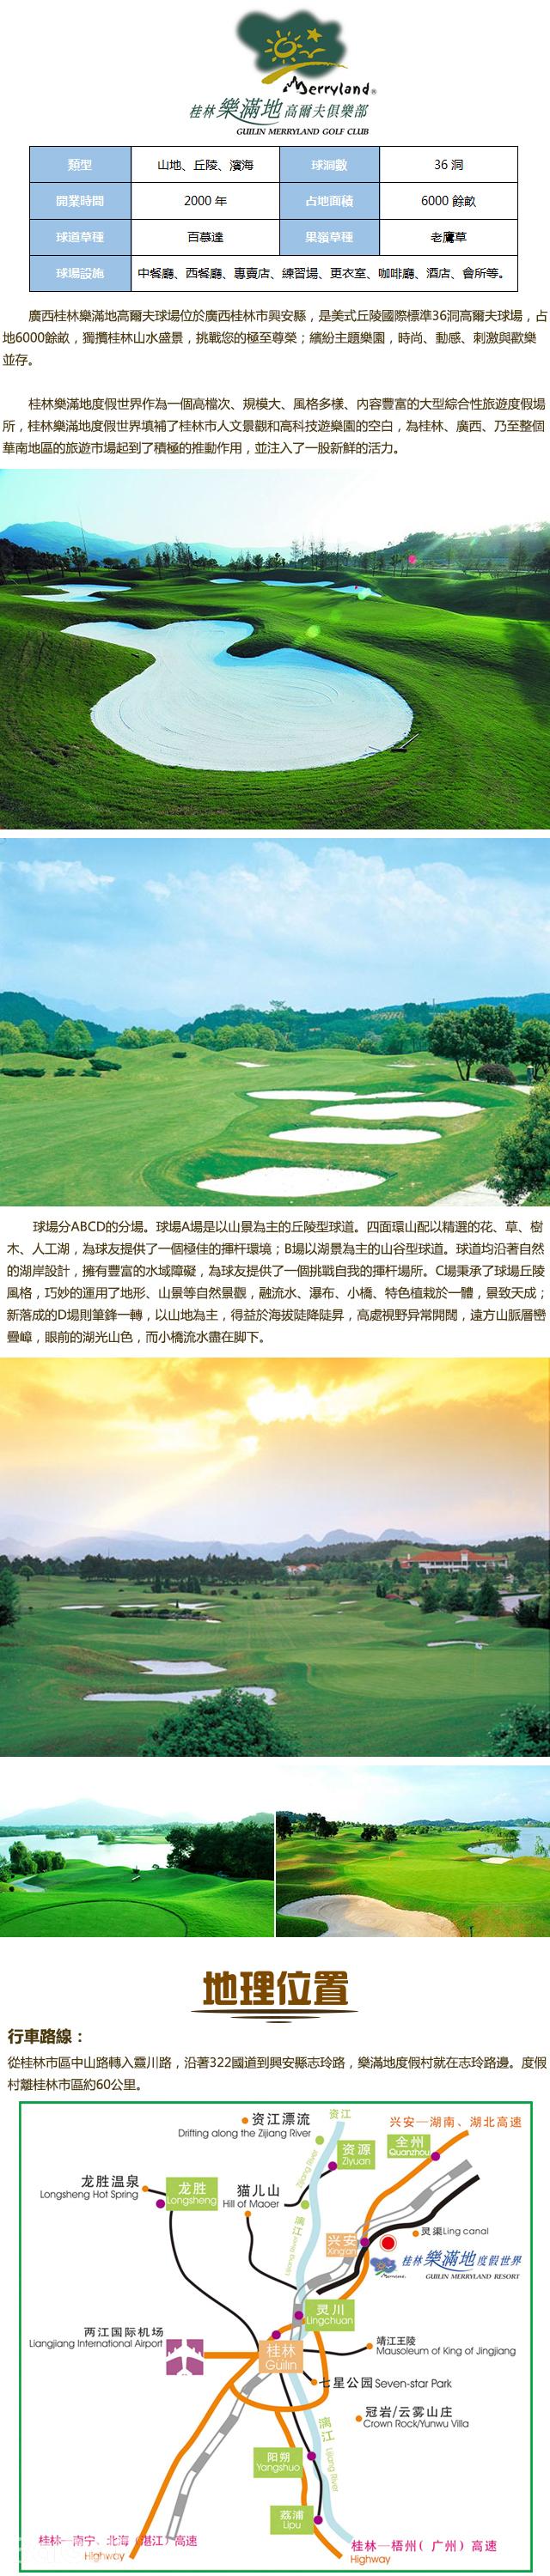 桂林樂滿地高爾夫俱樂部簡介